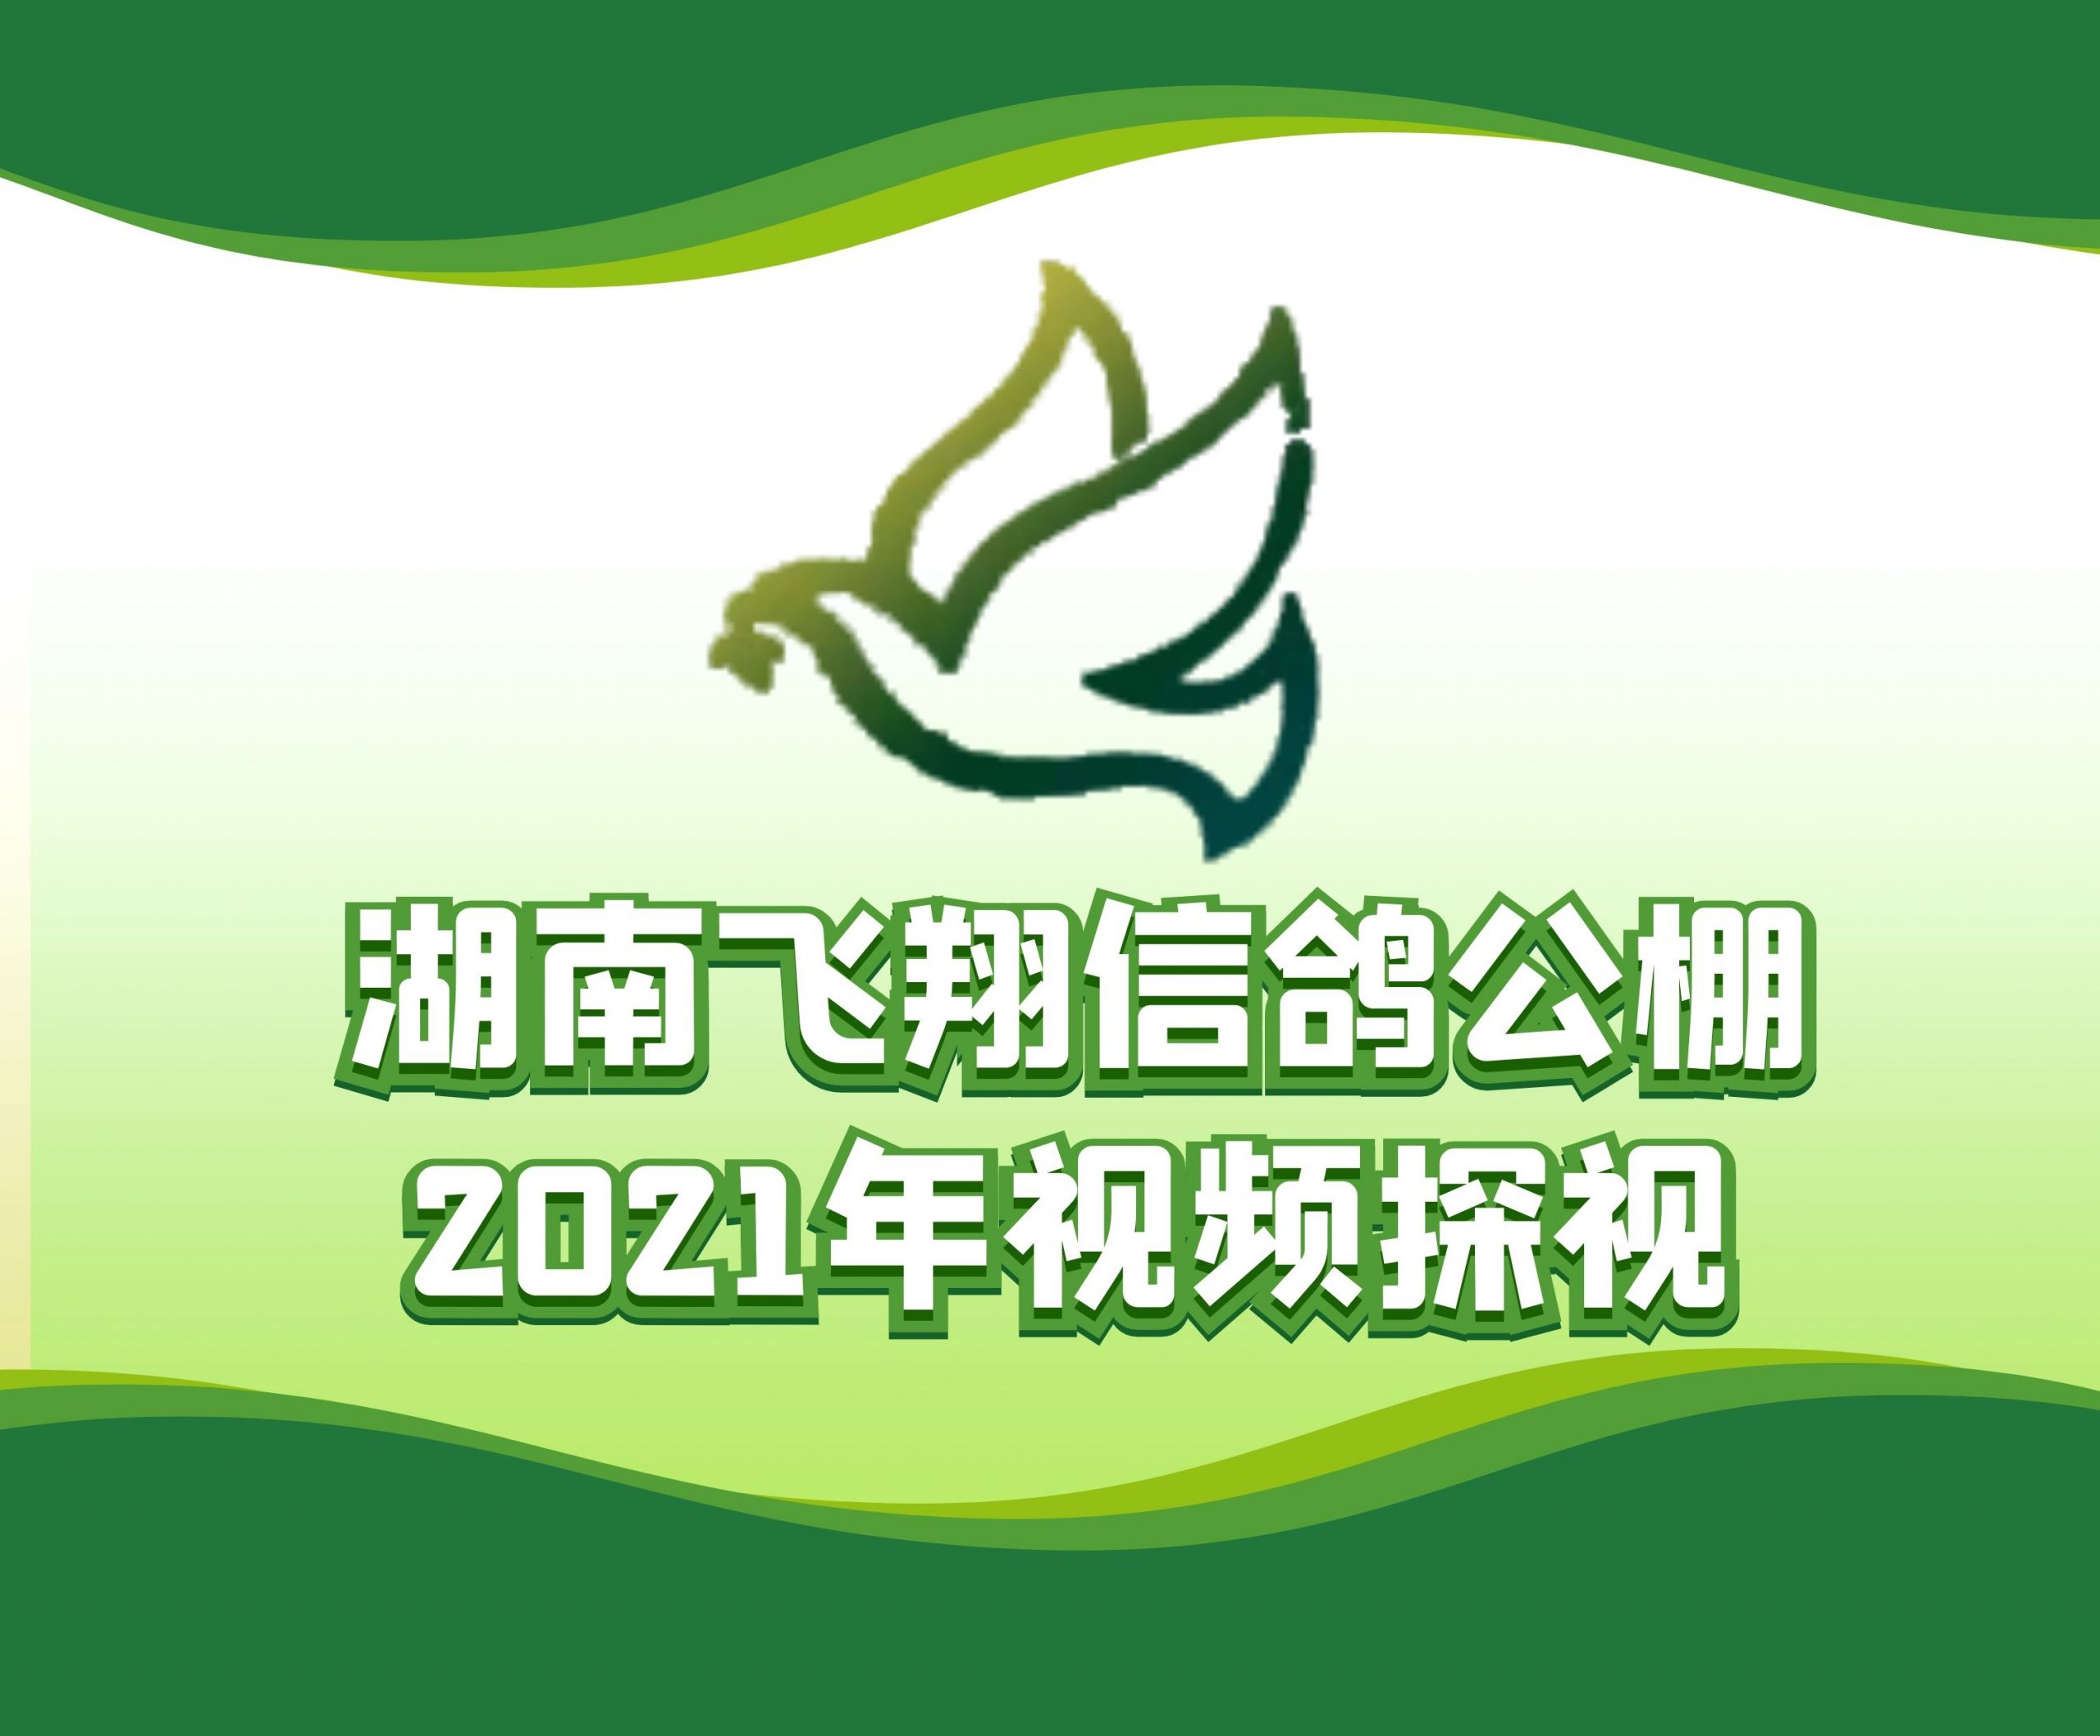 刘万钰-2021-14-0053052